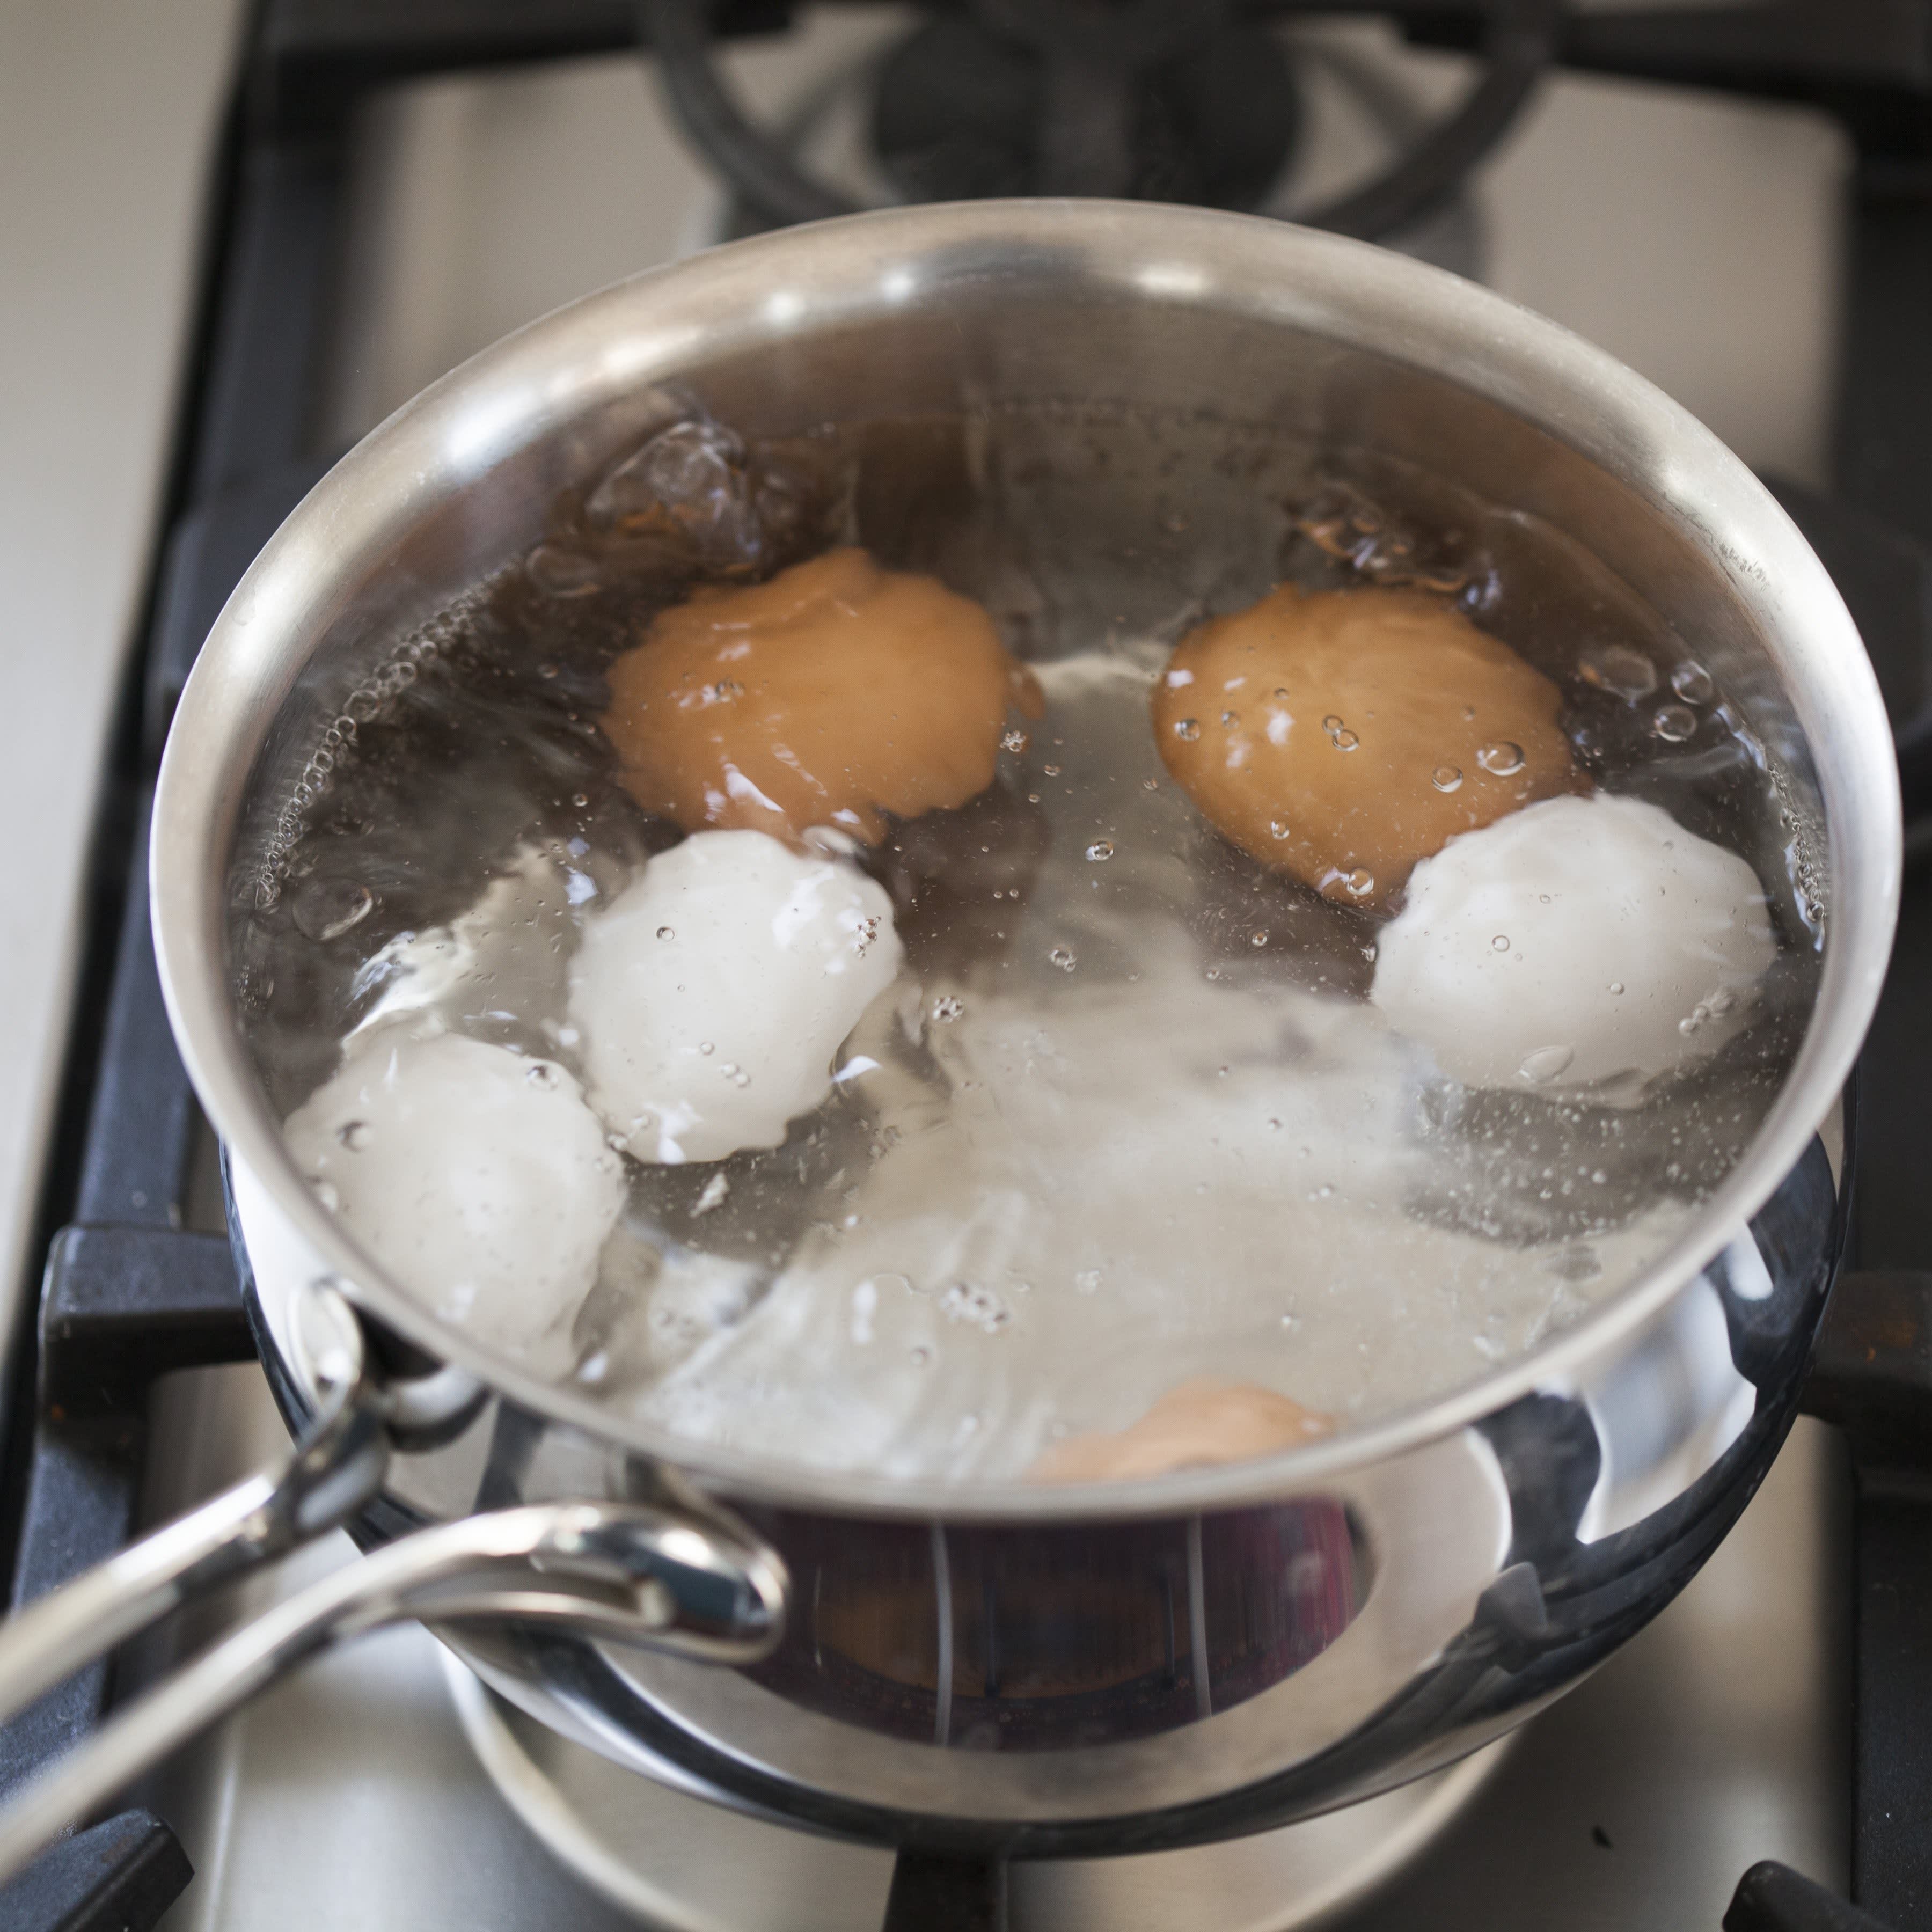 Видео вареные яички. Яйца в кастрюле. Zqwf d RFCN.HTK. Яйца варятся. Яйца в кипящей воде.